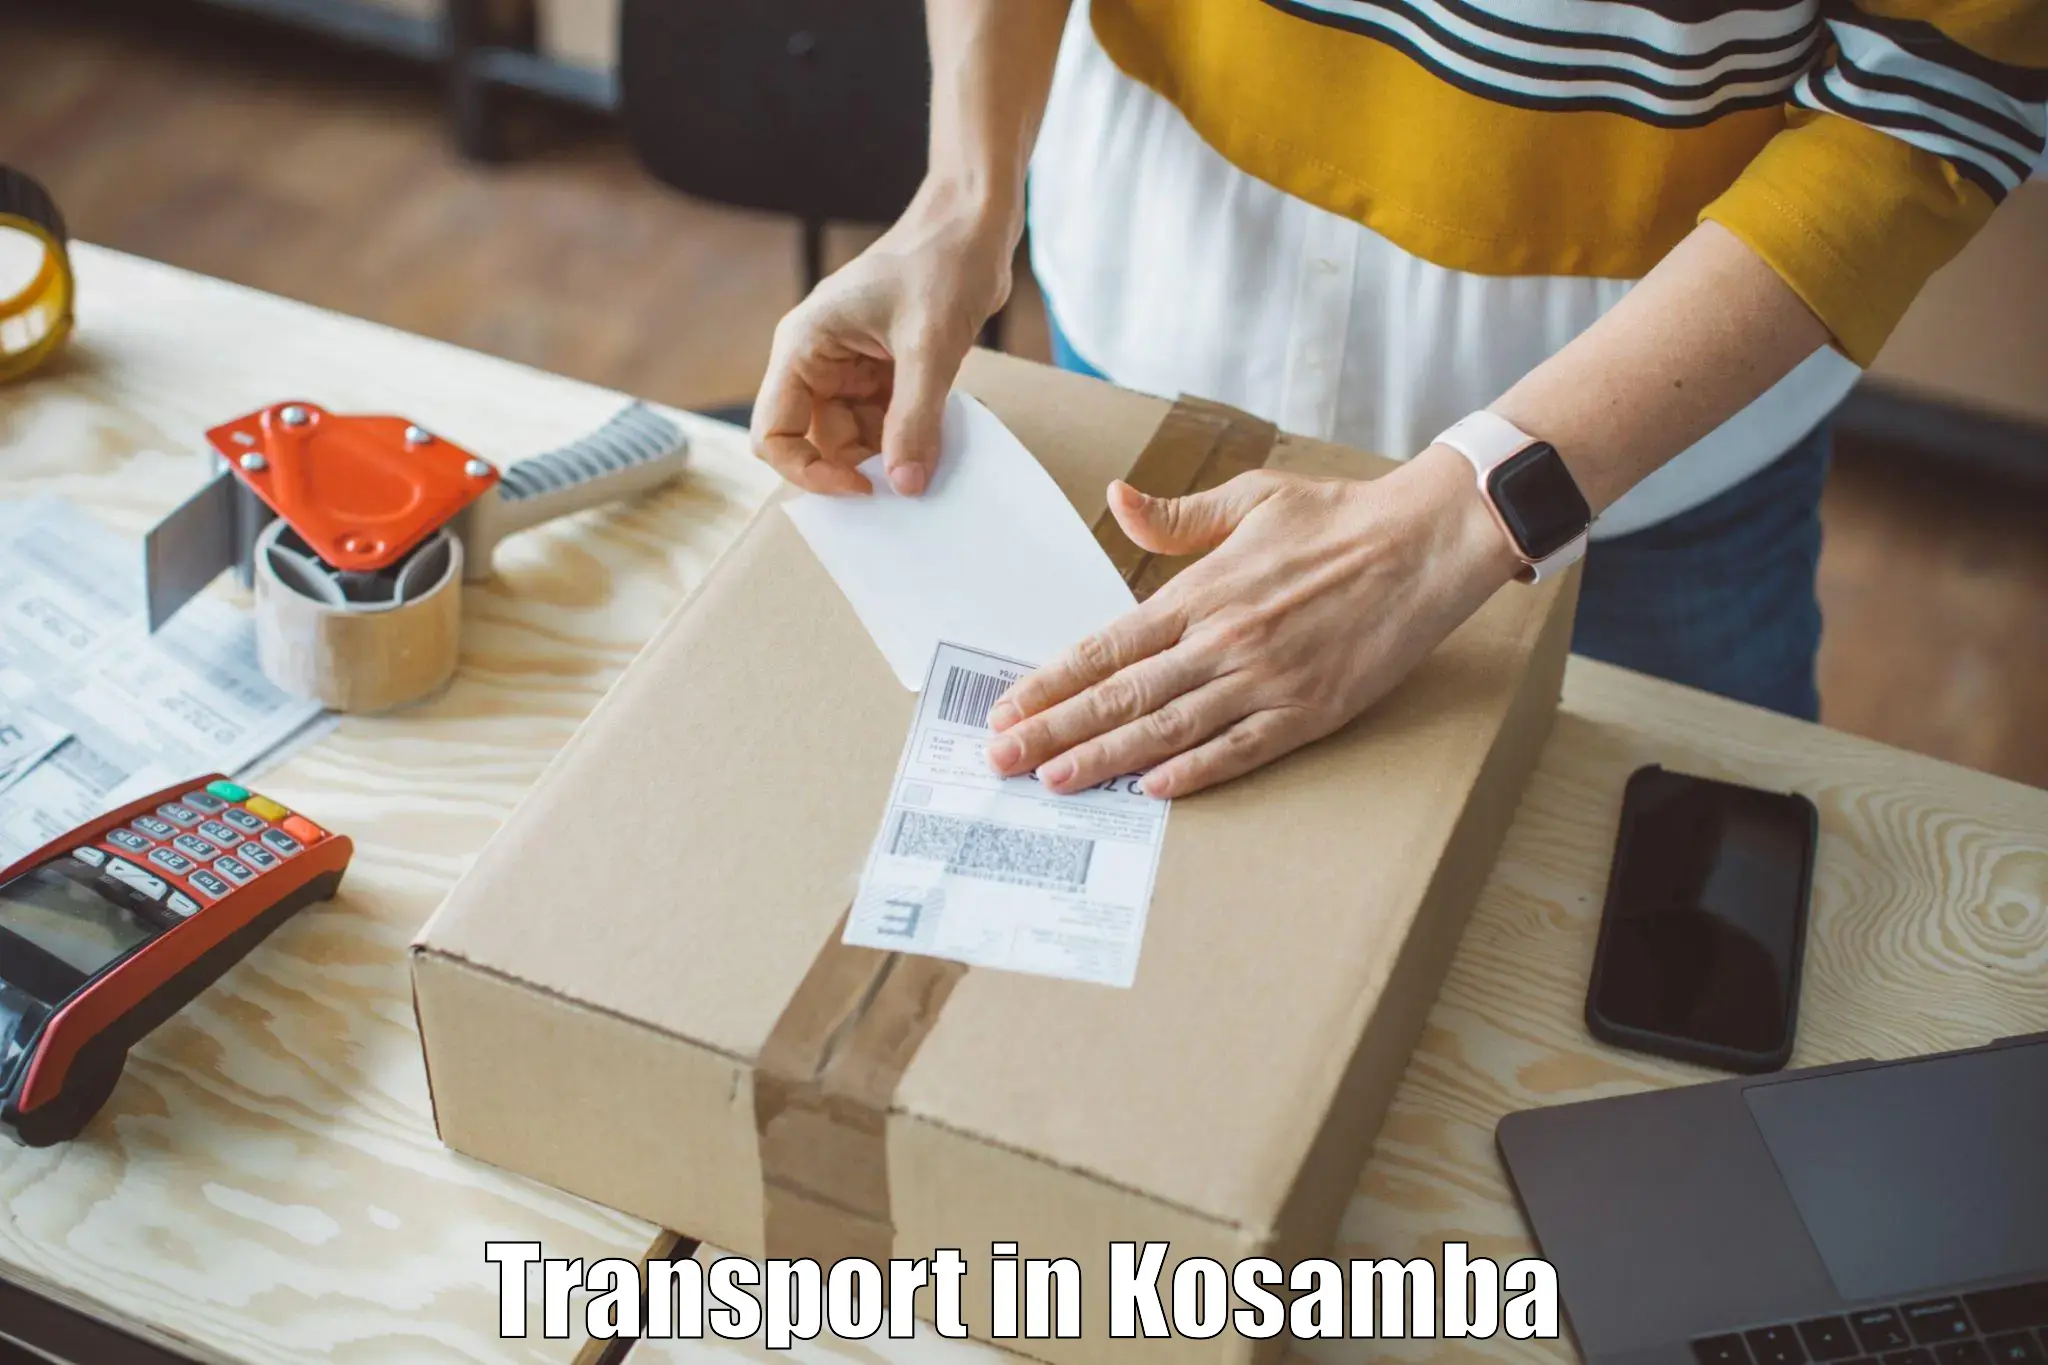 Online transport in Kosamba